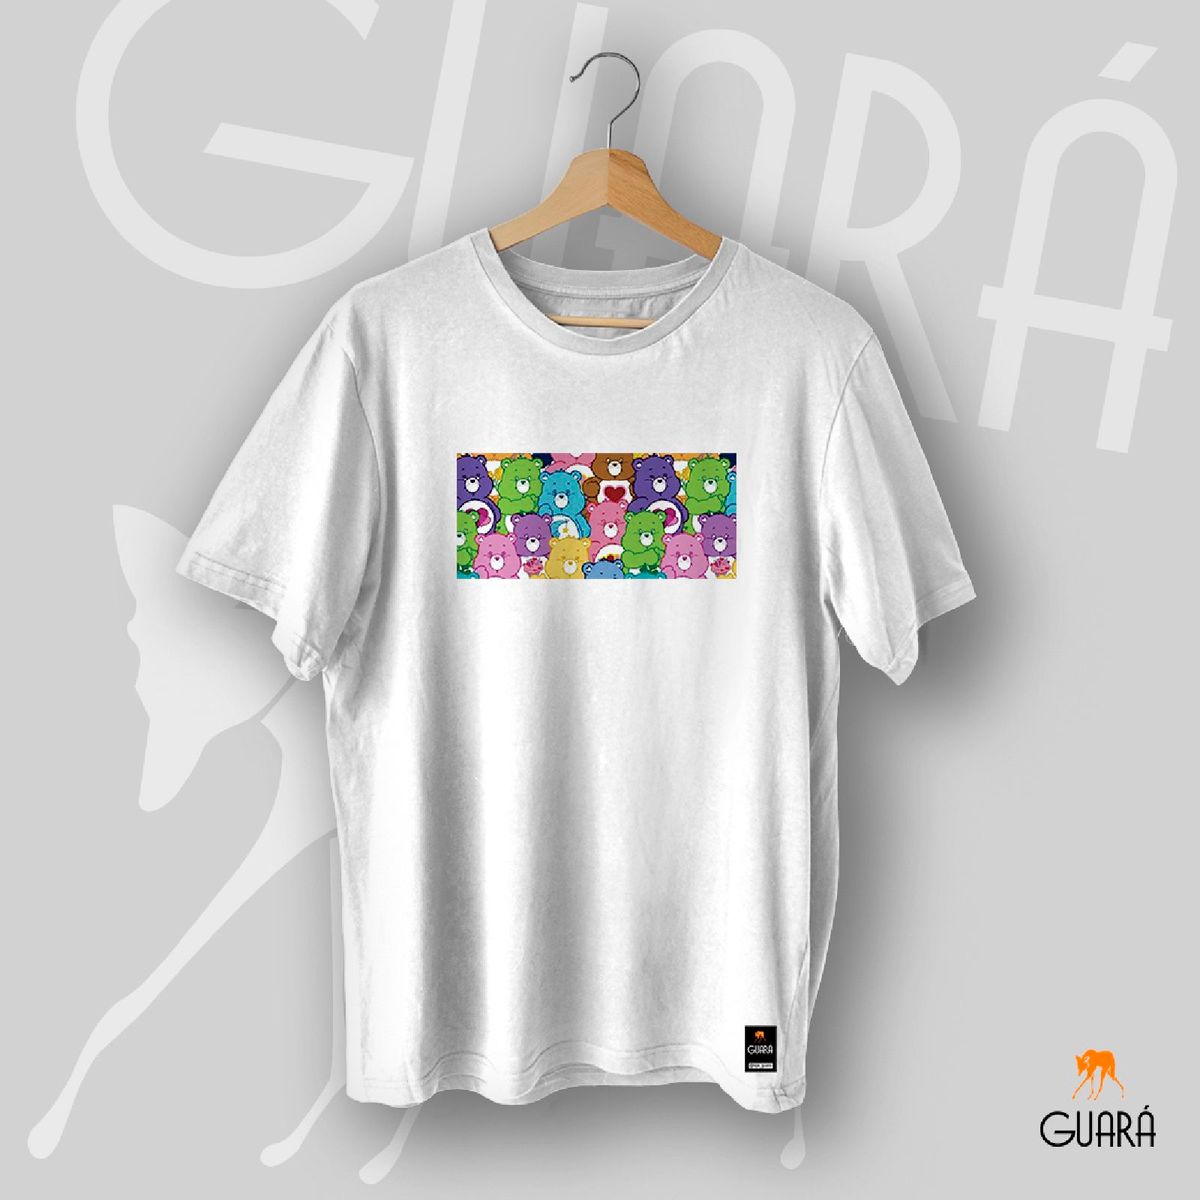 Camiseta Ursinhos Carinhosos Tumblr T-Shirt Unissex Aesthetic